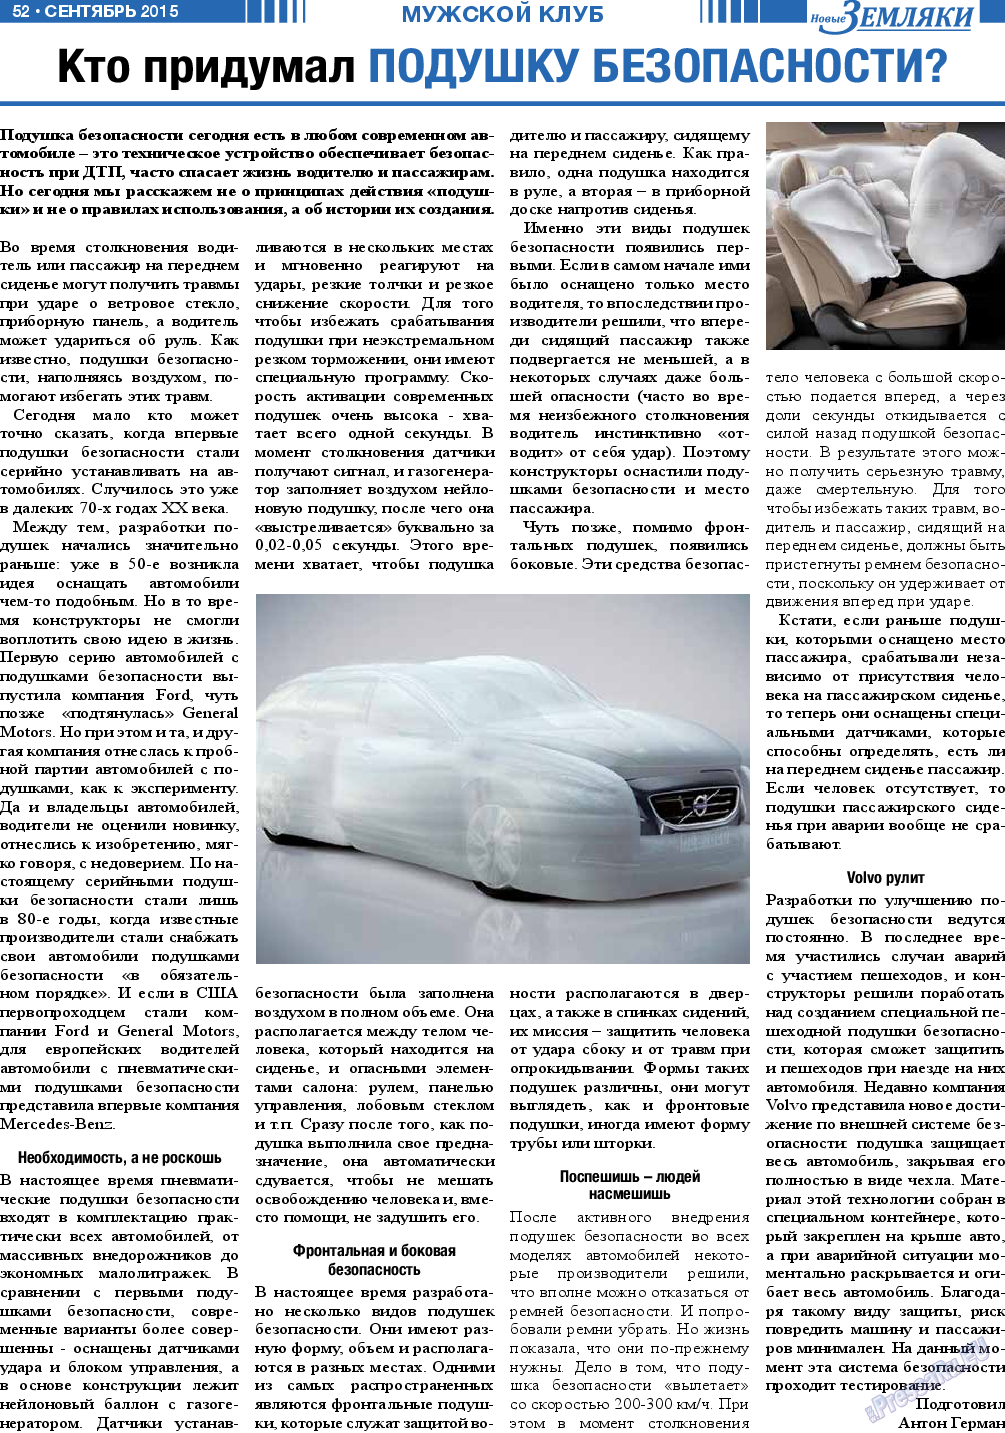 Новые Земляки, газета. 2015 №9 стр.52